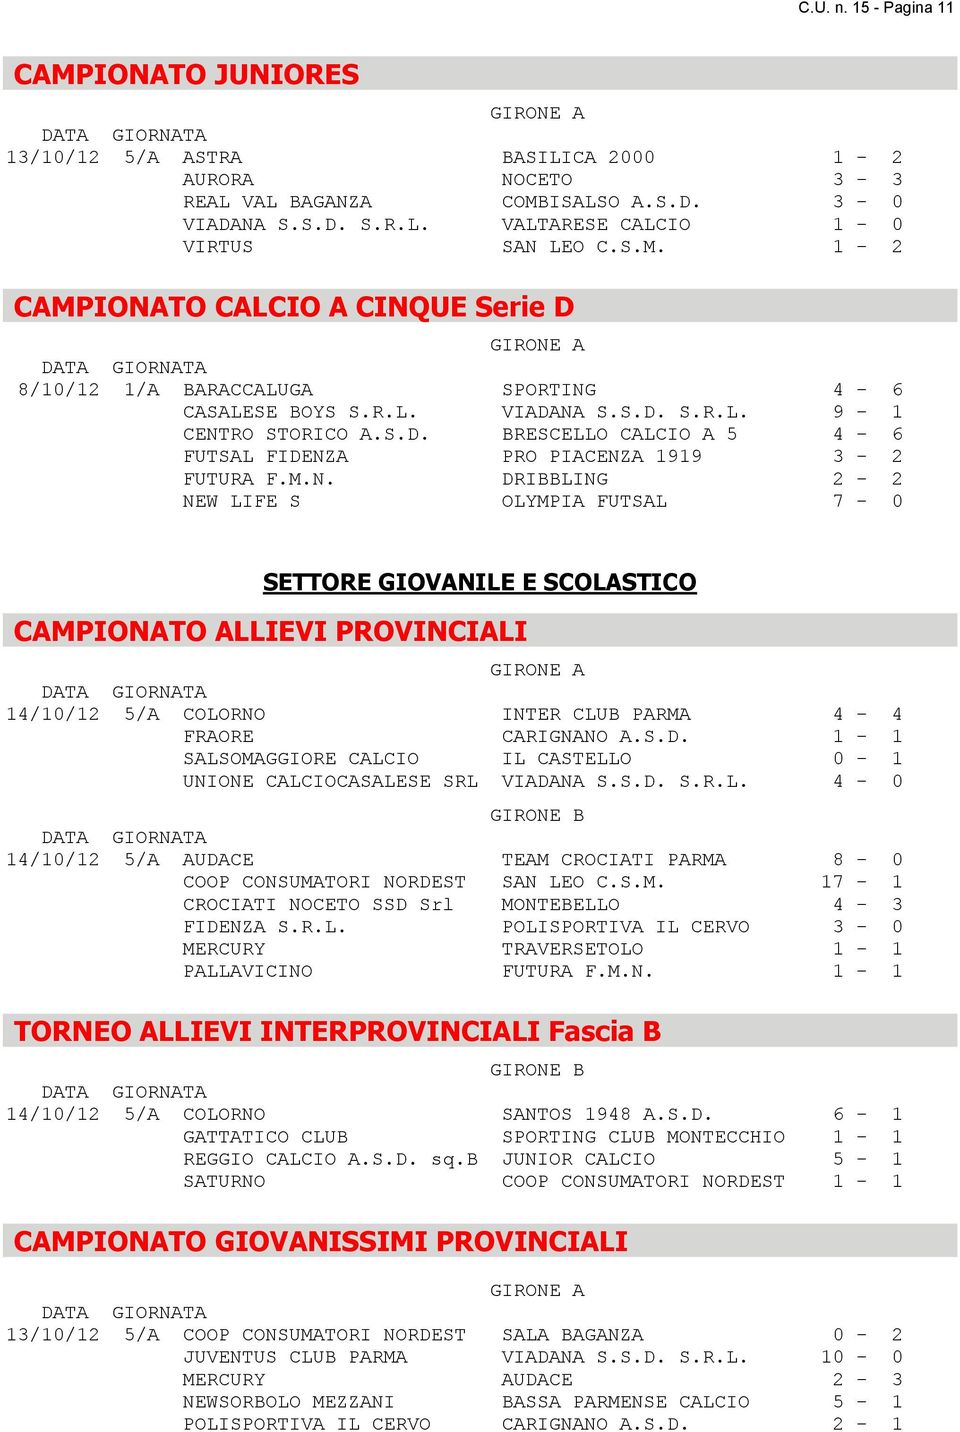 M.N. DRIBBLING 2-2 NEW LIFE S OLYMPIA FUTSAL 7-0 SETTORE GIOVANILE E SCOLASTICO CAMPIONATO ALLIEVI PROVINCIALI GIRONE A 14/10/12 5/A COLORNO INTER CLUB PARMA 4-4 FRAORE CARIGNANO A.S.D. 1-1 SALSOMAGGIORE CALCIO IL CASTELLO 0-1 UNIONE CALCIOCASALESE SRL VIADANA S.